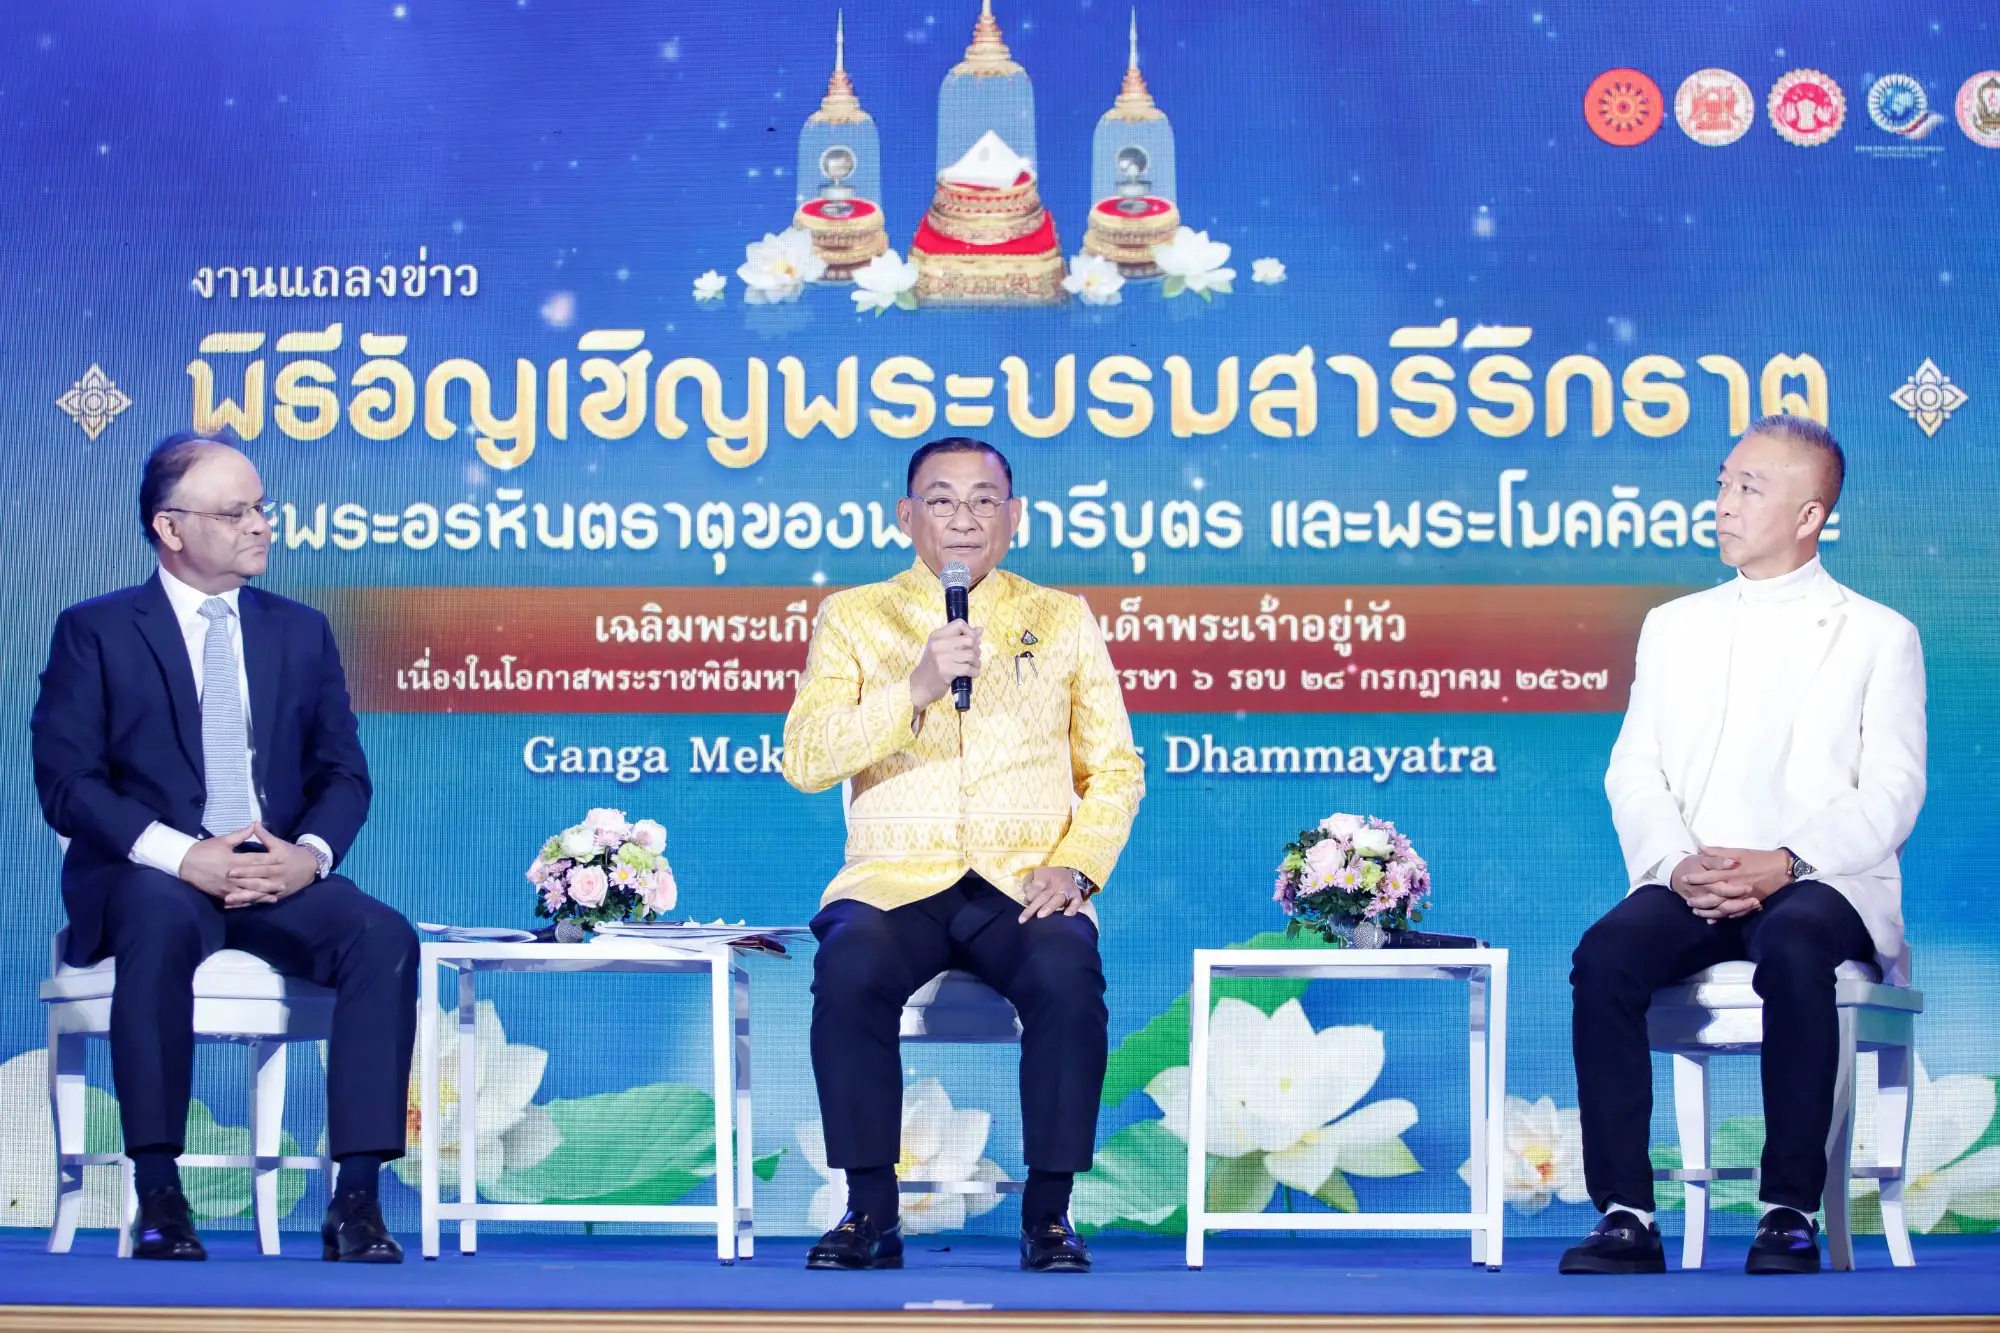 泰国文化部长森萨空帕尼、印度驻泰国大使Nagesh Singh、菩提伽耶维伽拉亚980学院代表Supachai Veerapuchong以及泰国宗教事务部总监等高层皆出席（图片来源：看见泰国）